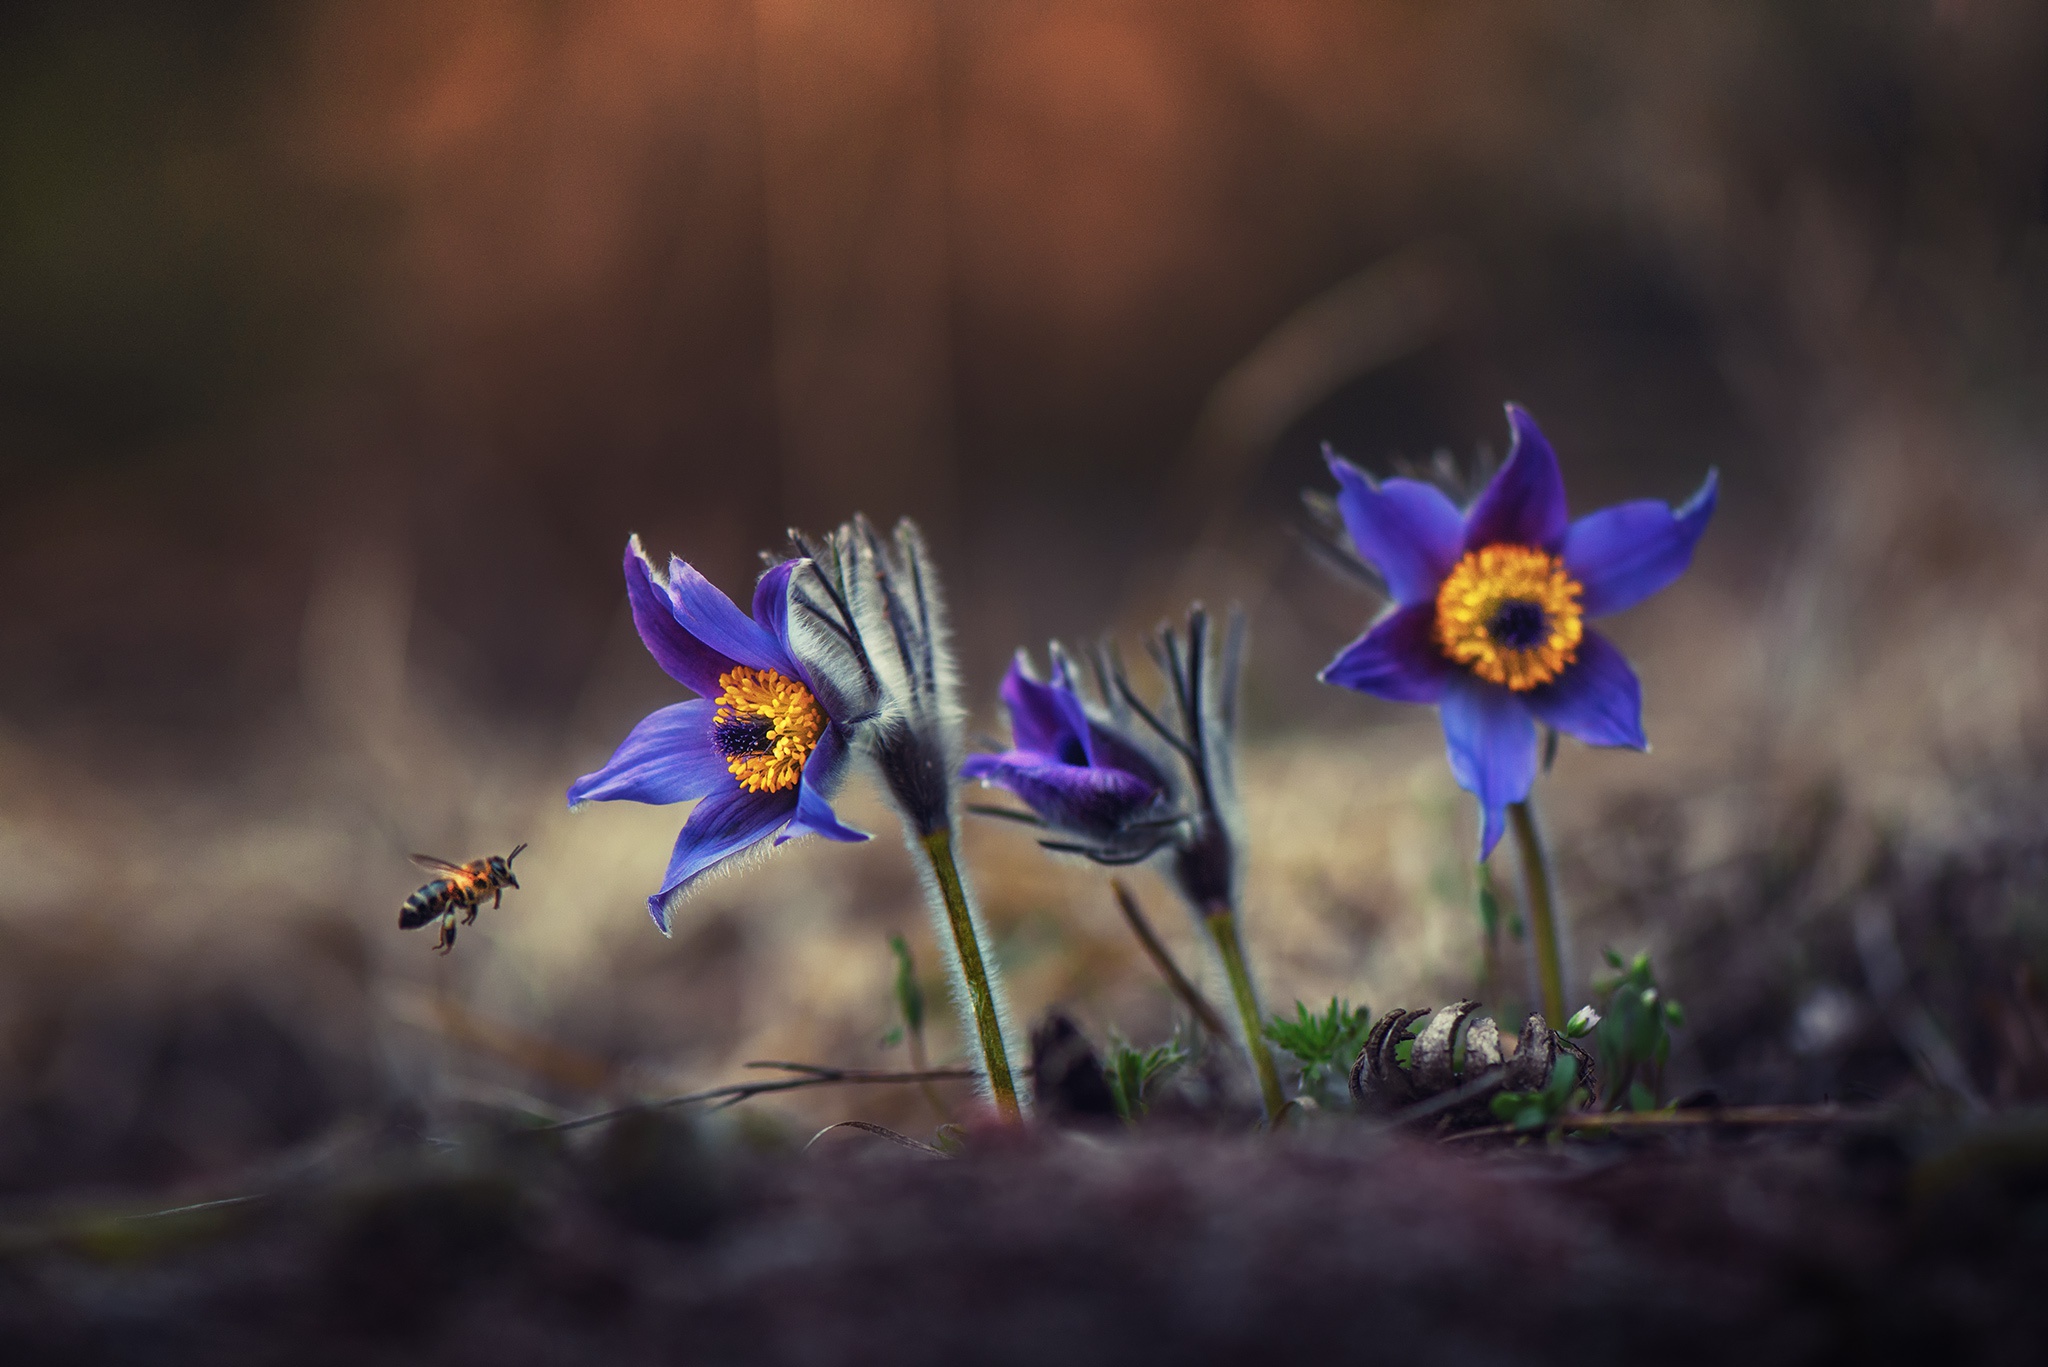 Скачать обои бесплатно Природа, Цветок, Макро, Пчела, Земля/природа, Синий Цветок, Флауэрсы картинка на рабочий стол ПК